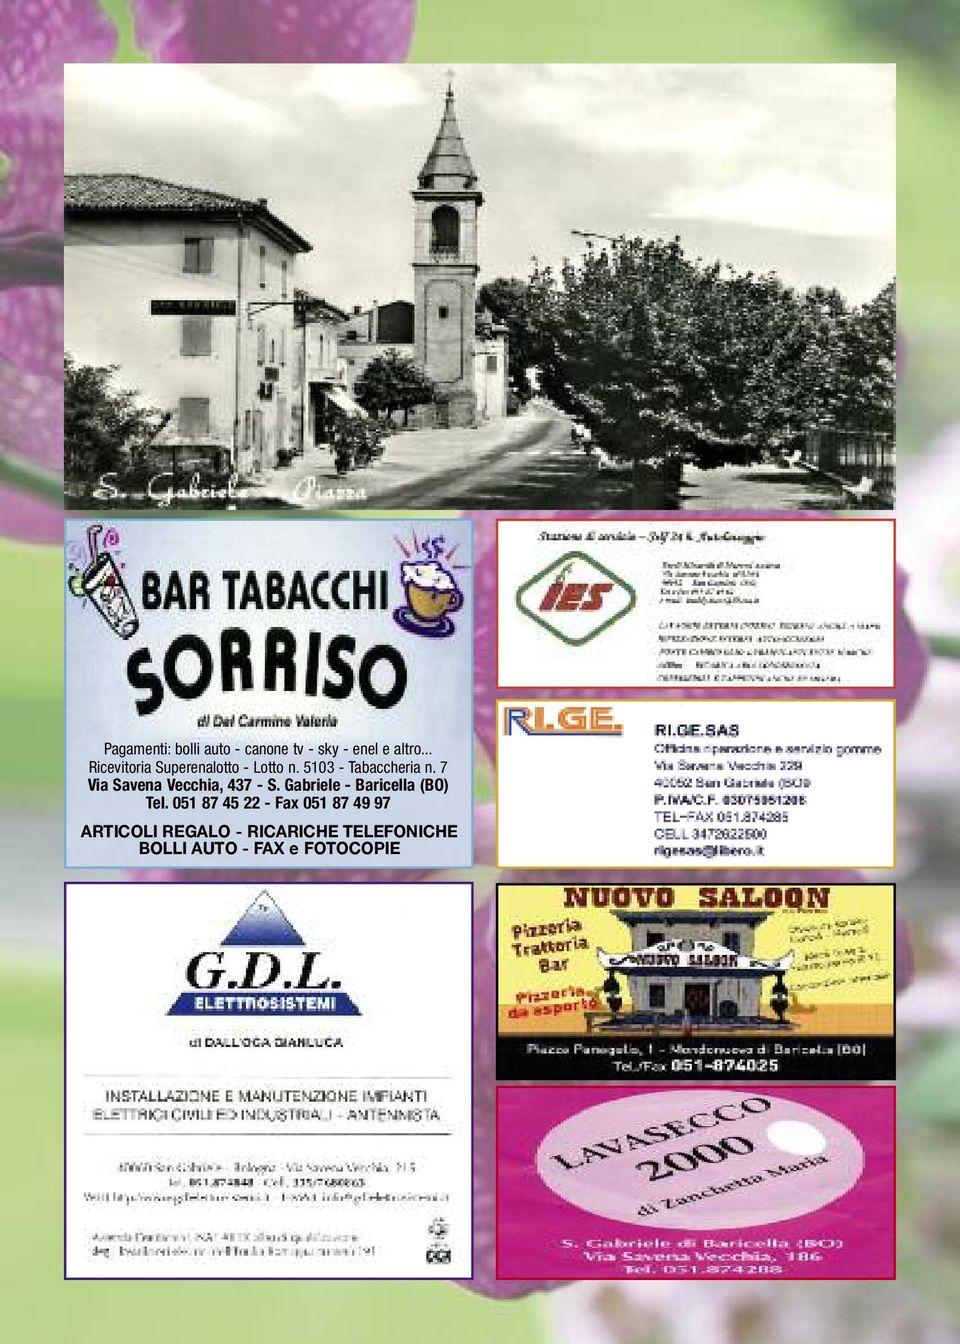 7 Via Savena Vecchia, 437 - S. Gabriele - Baricella (BO) Tel.